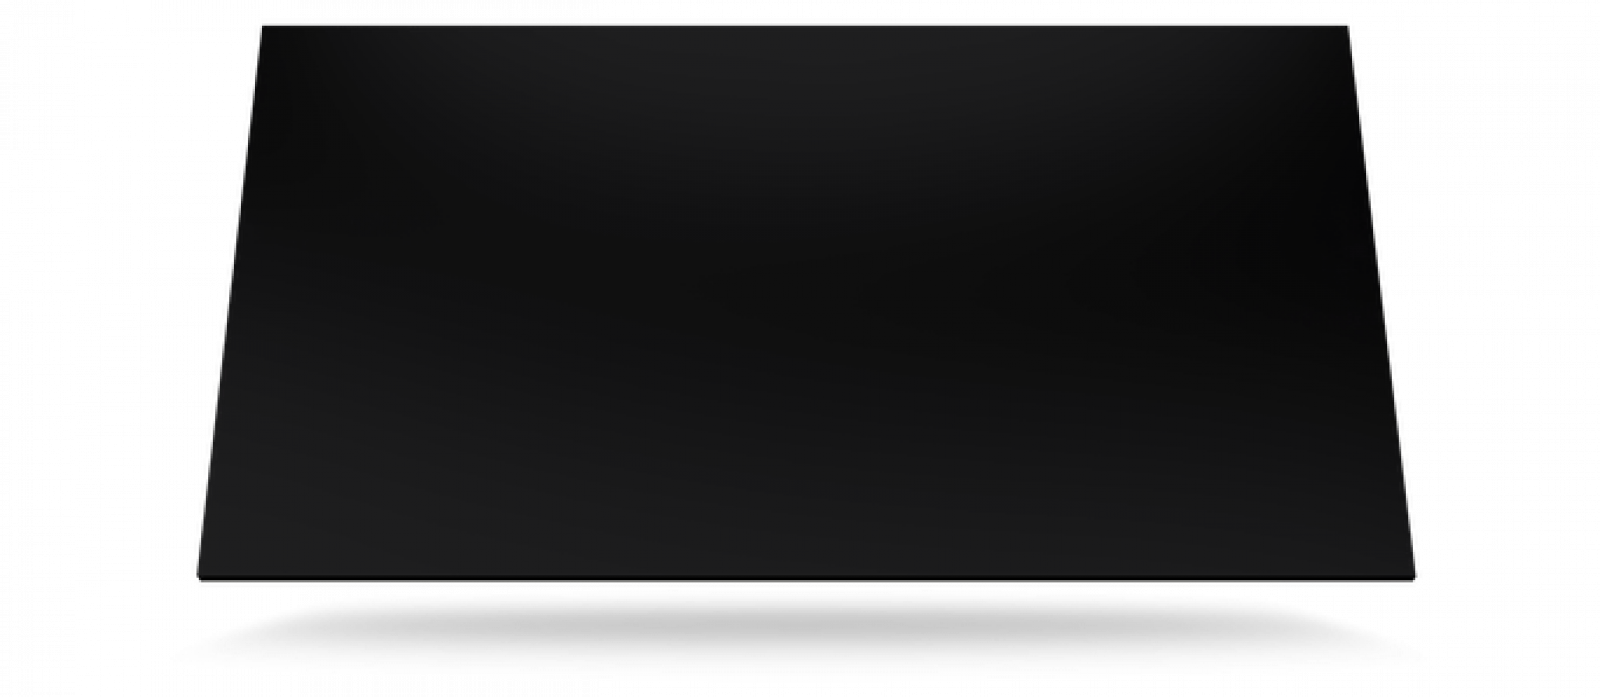 Dekton Spectra 159 x 71 cm Fliese Glanz